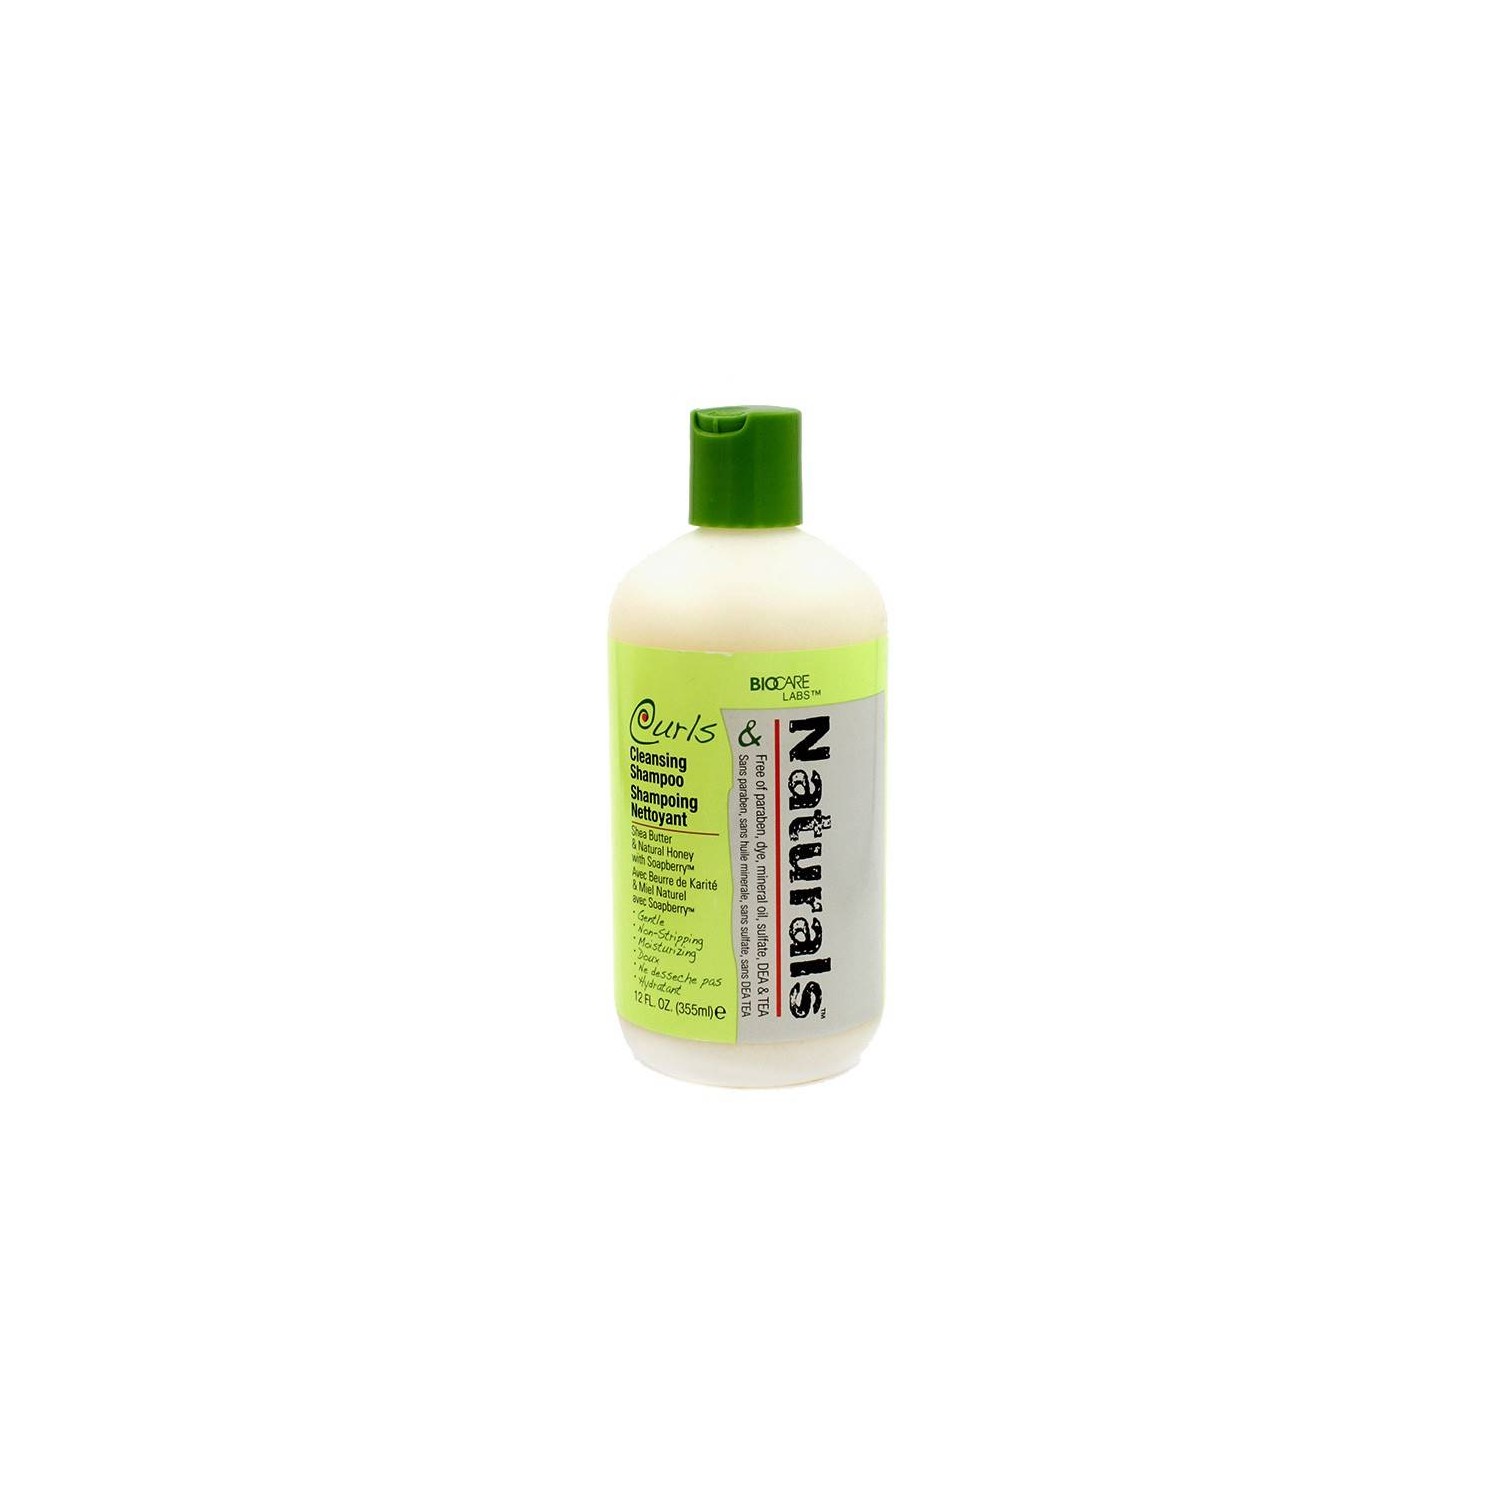 Biocare Curls Naturals Cleansing Shampoo 355 ml